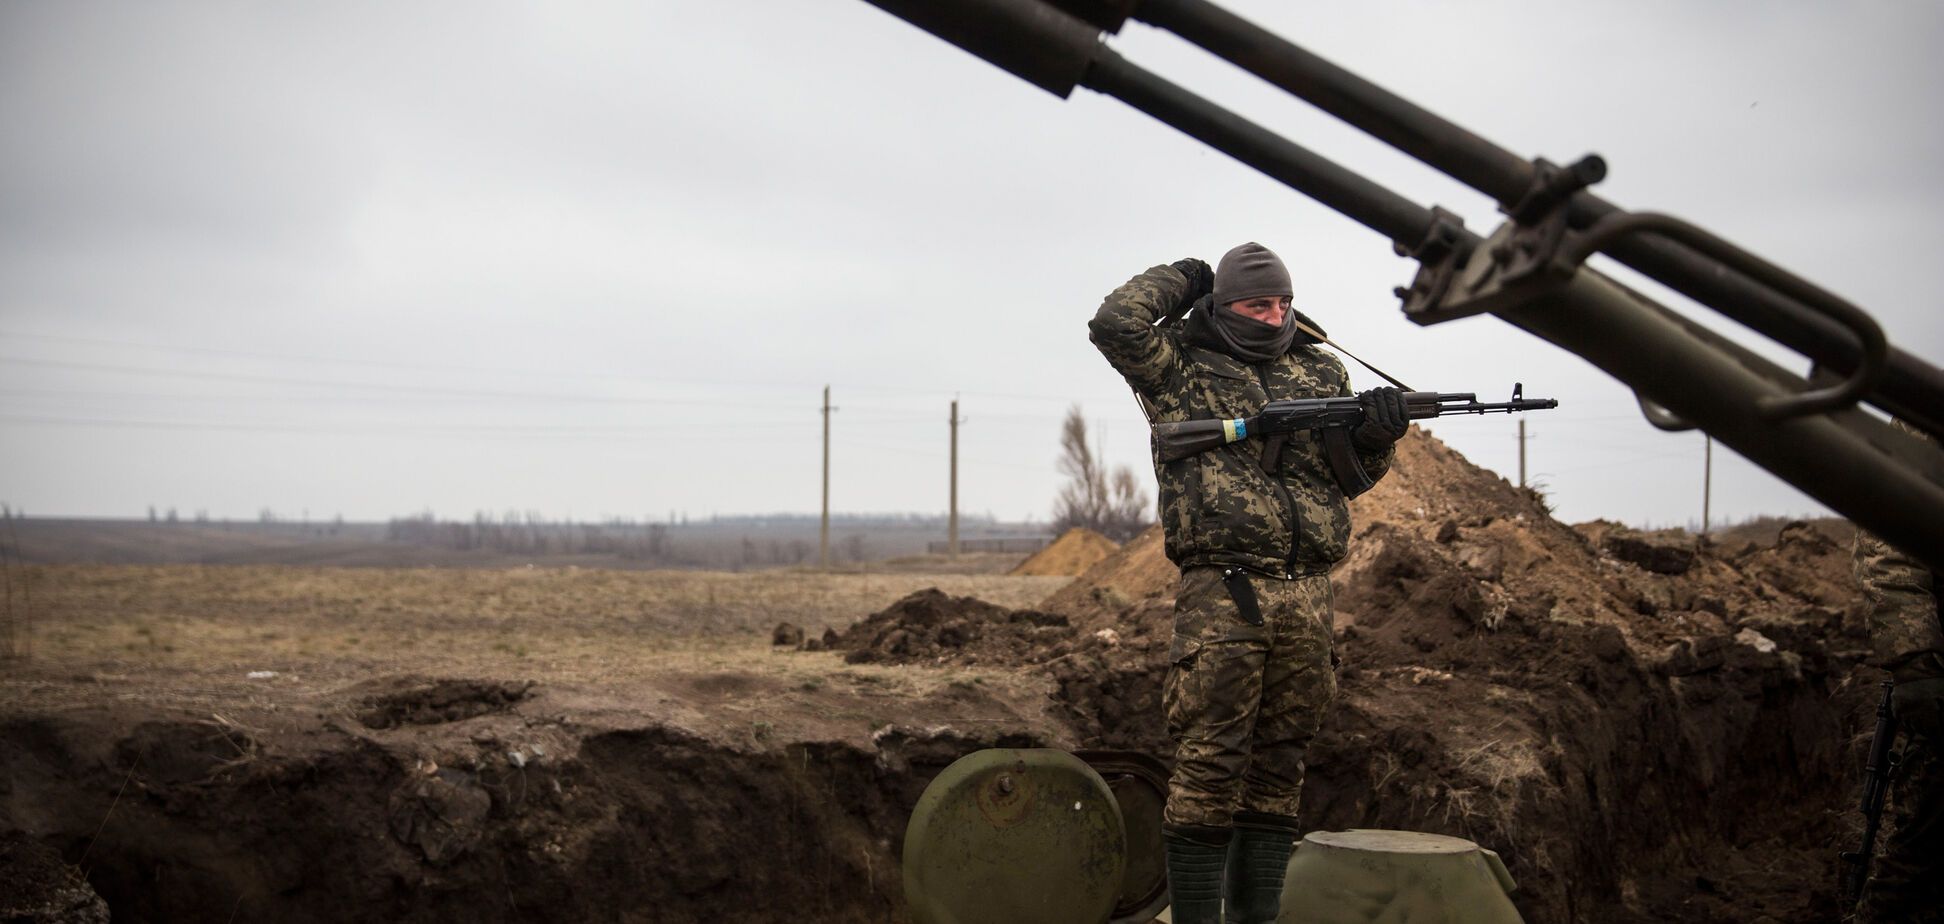 Стрелок был пьян: появились подробности убийства бойца ВСУ под Донецком